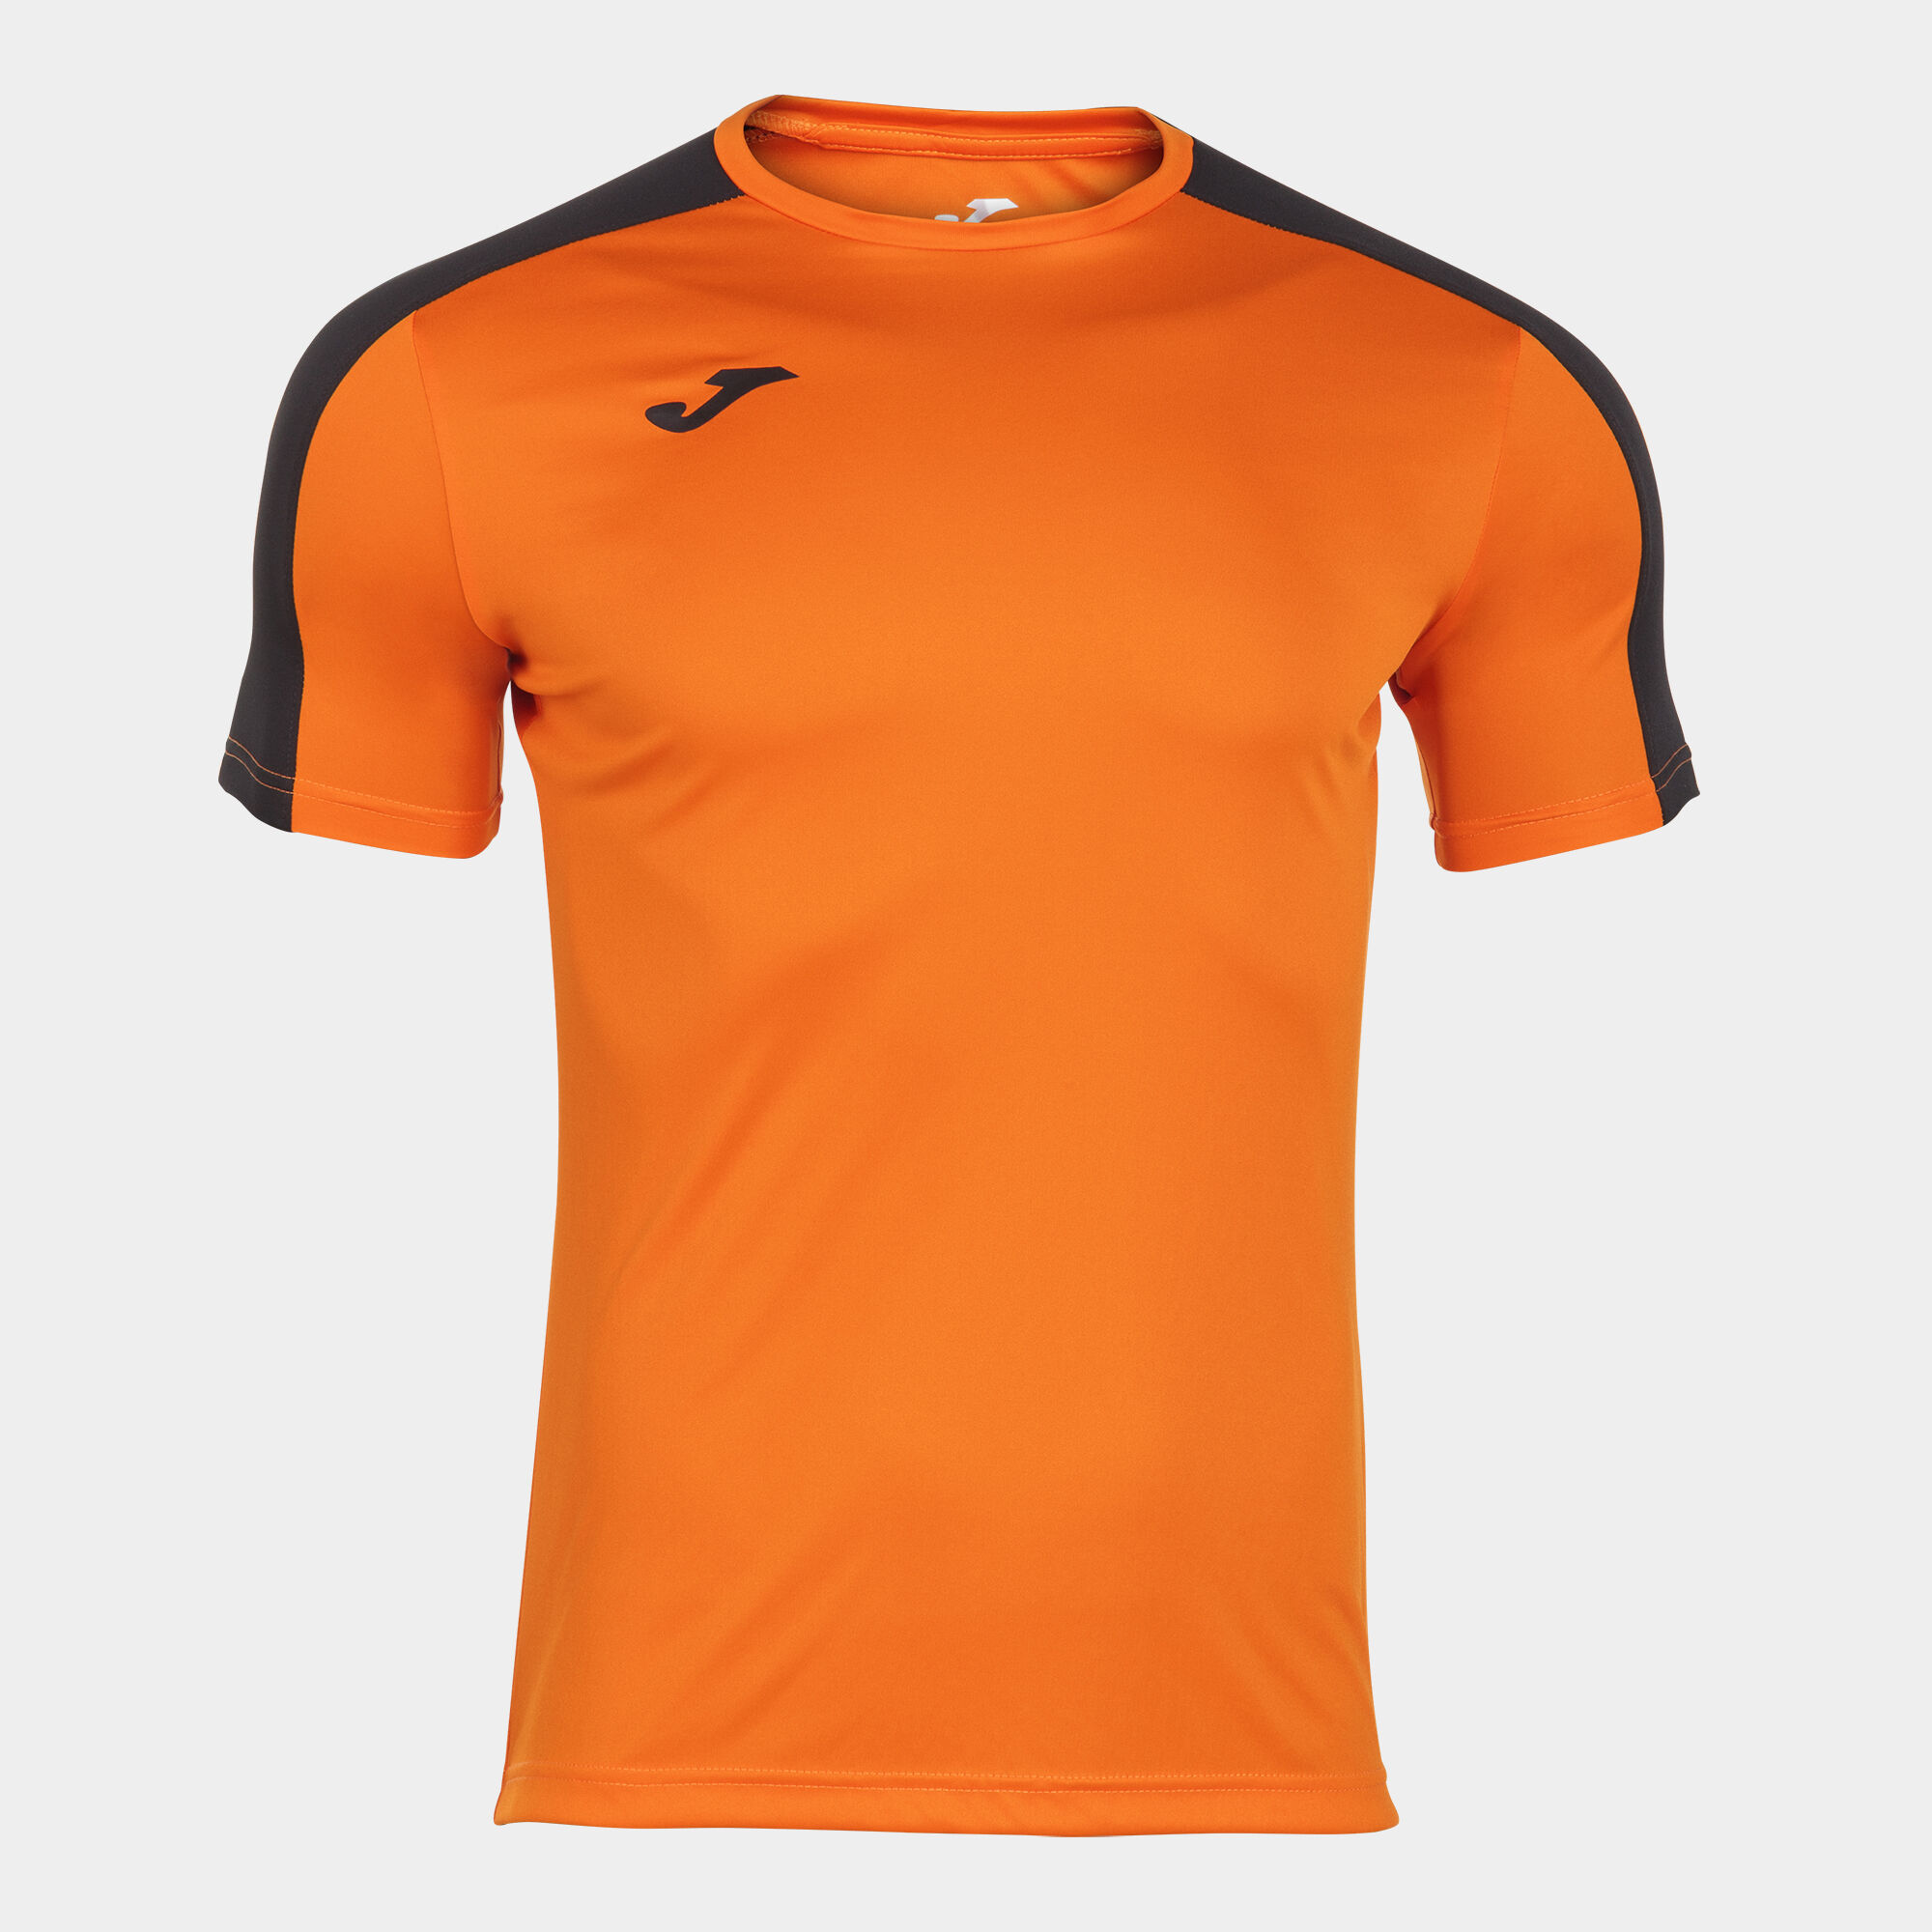 Shirt short sleeve man Academy III orange black